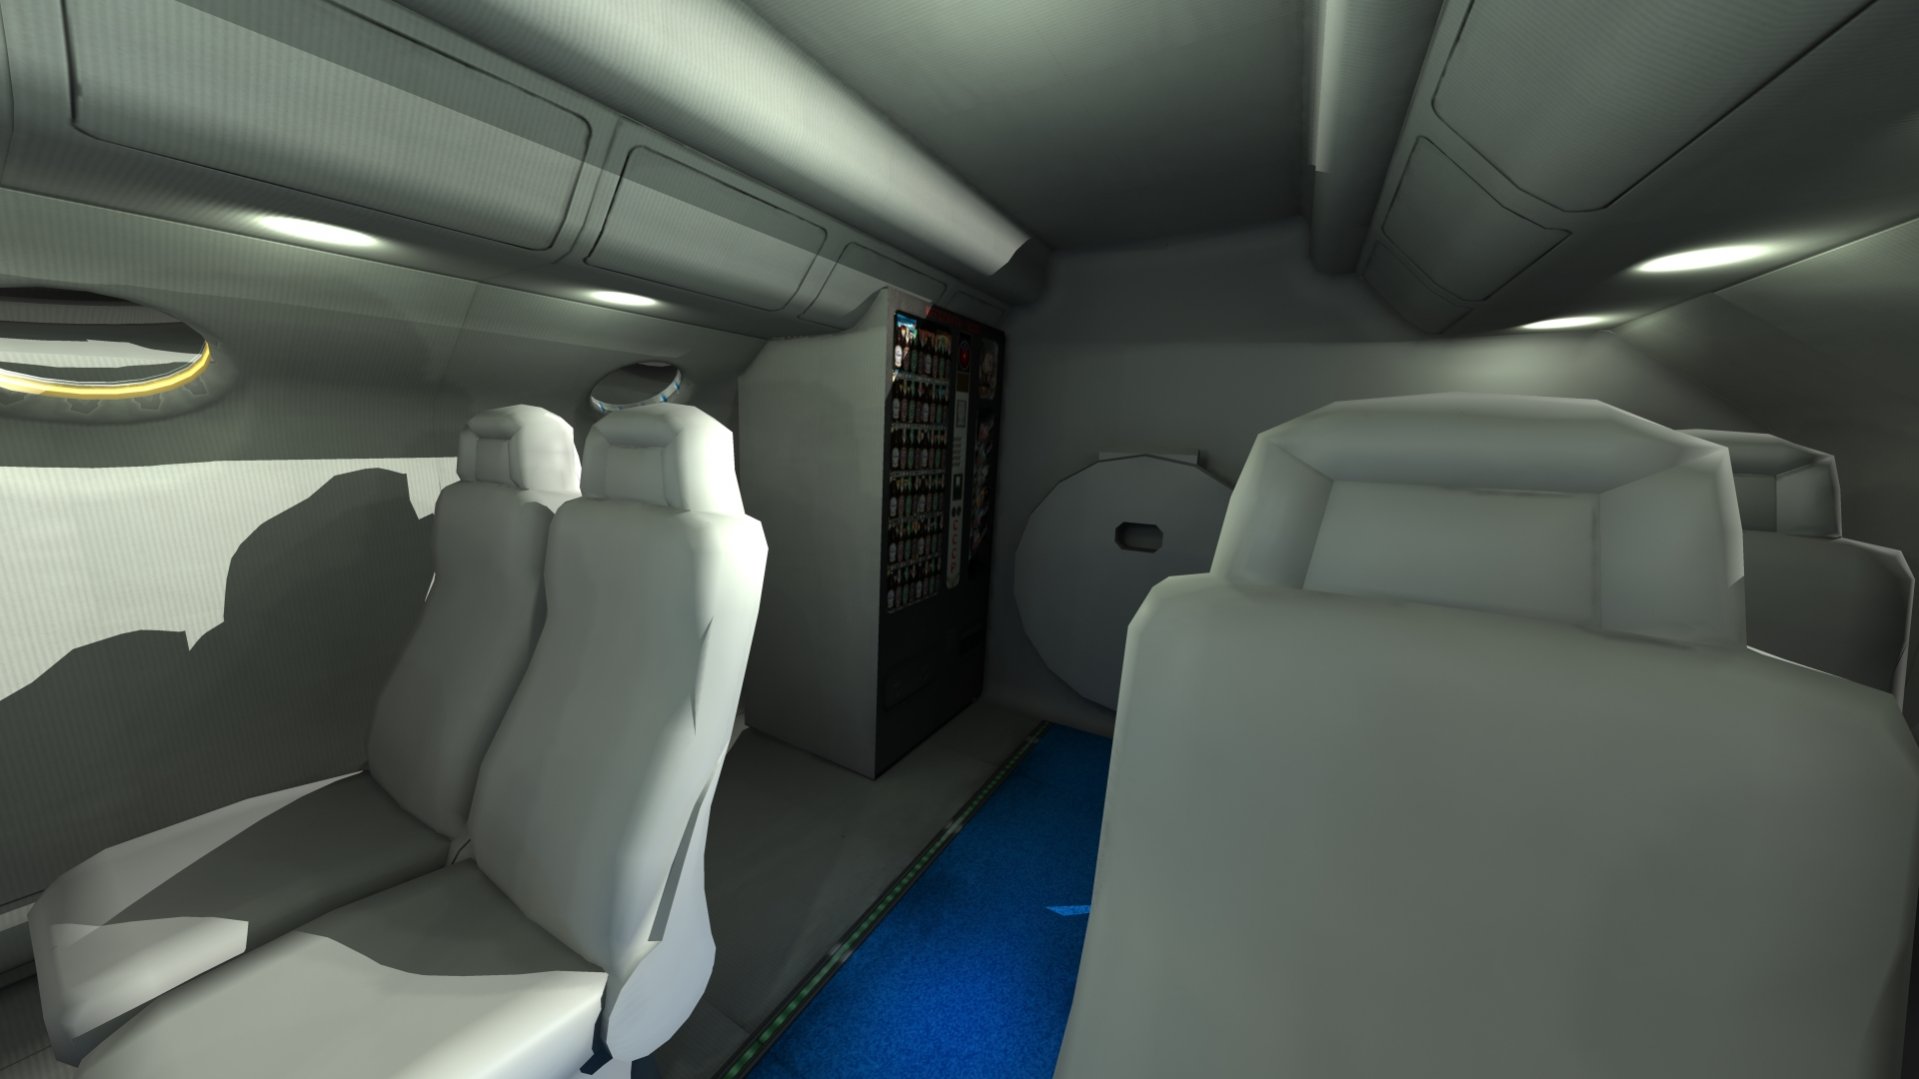 XR2 Ravenstar mk2 passenger compartment 09.jpg